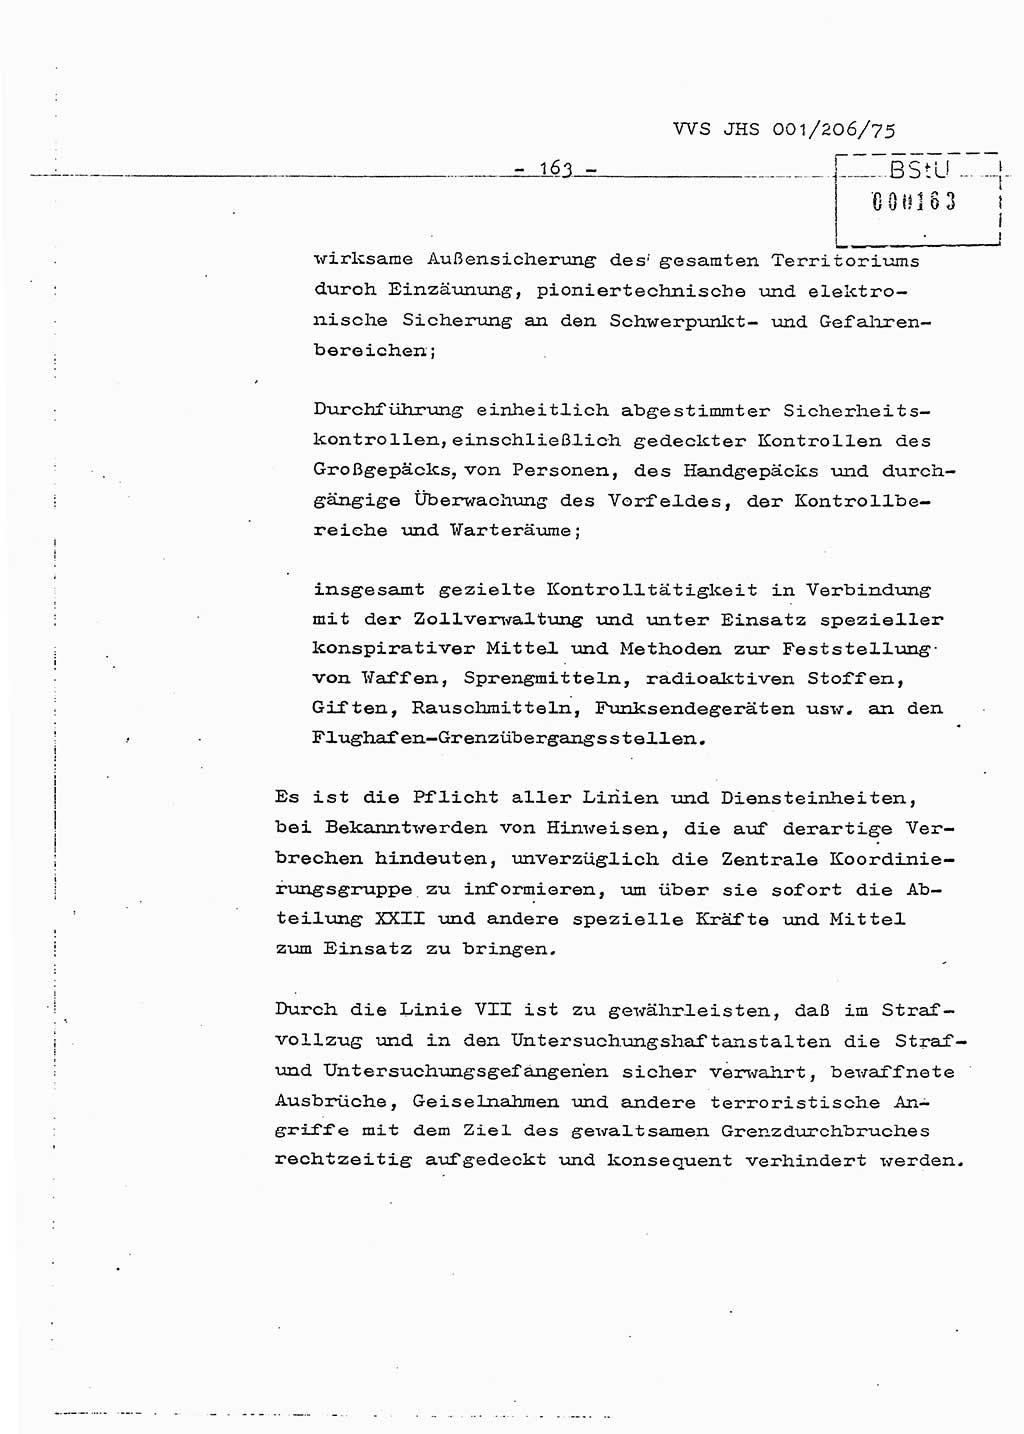 Dissertation Generalmajor Manfred Hummitzsch (Leiter der BV Leipzig), Generalmajor Heinz Fiedler (HA Ⅵ), Oberst Rolf Fister (HA Ⅸ), Ministerium für Staatssicherheit (MfS) [Deutsche Demokratische Republik (DDR)], Juristische Hochschule (JHS), Vertrauliche Verschlußsache (VVS) 001-206/75, Potsdam 1975, Seite 163 (Diss. MfS DDR JHS VVS 001-206/75 1975, S. 163)